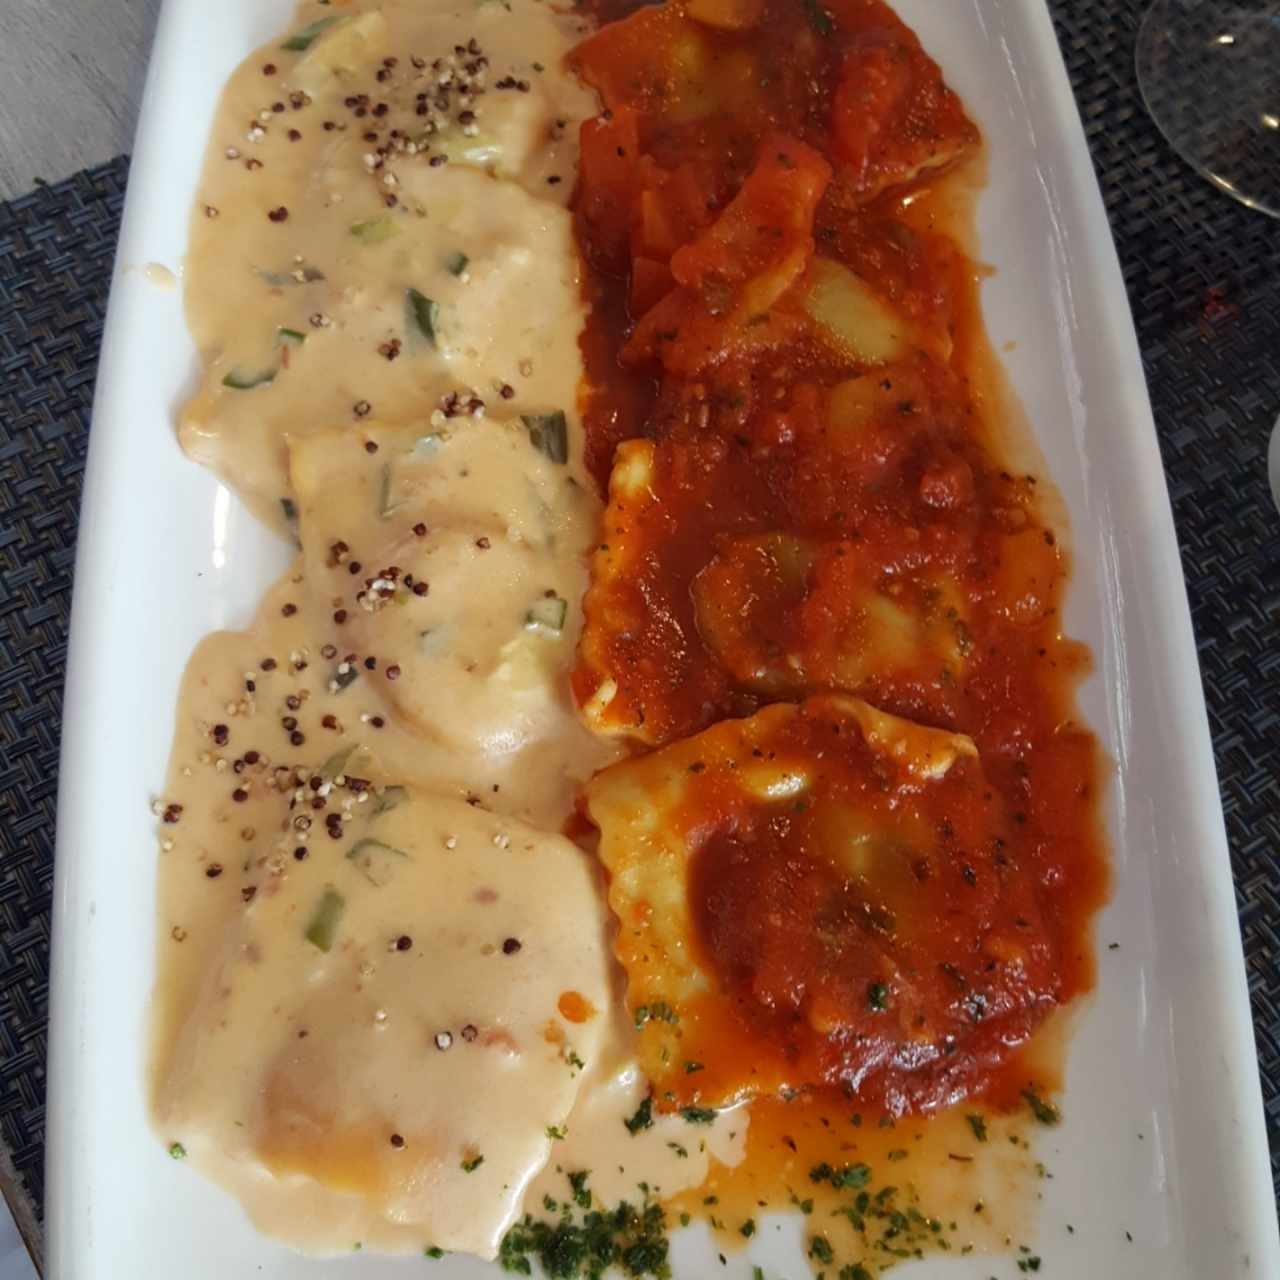 Duo de Ravioli de Salmon Ahumado y Queso Ricotta, a la Crema de Cebollina Junto a Raviolis de Berenjena a la Pizzaiola.